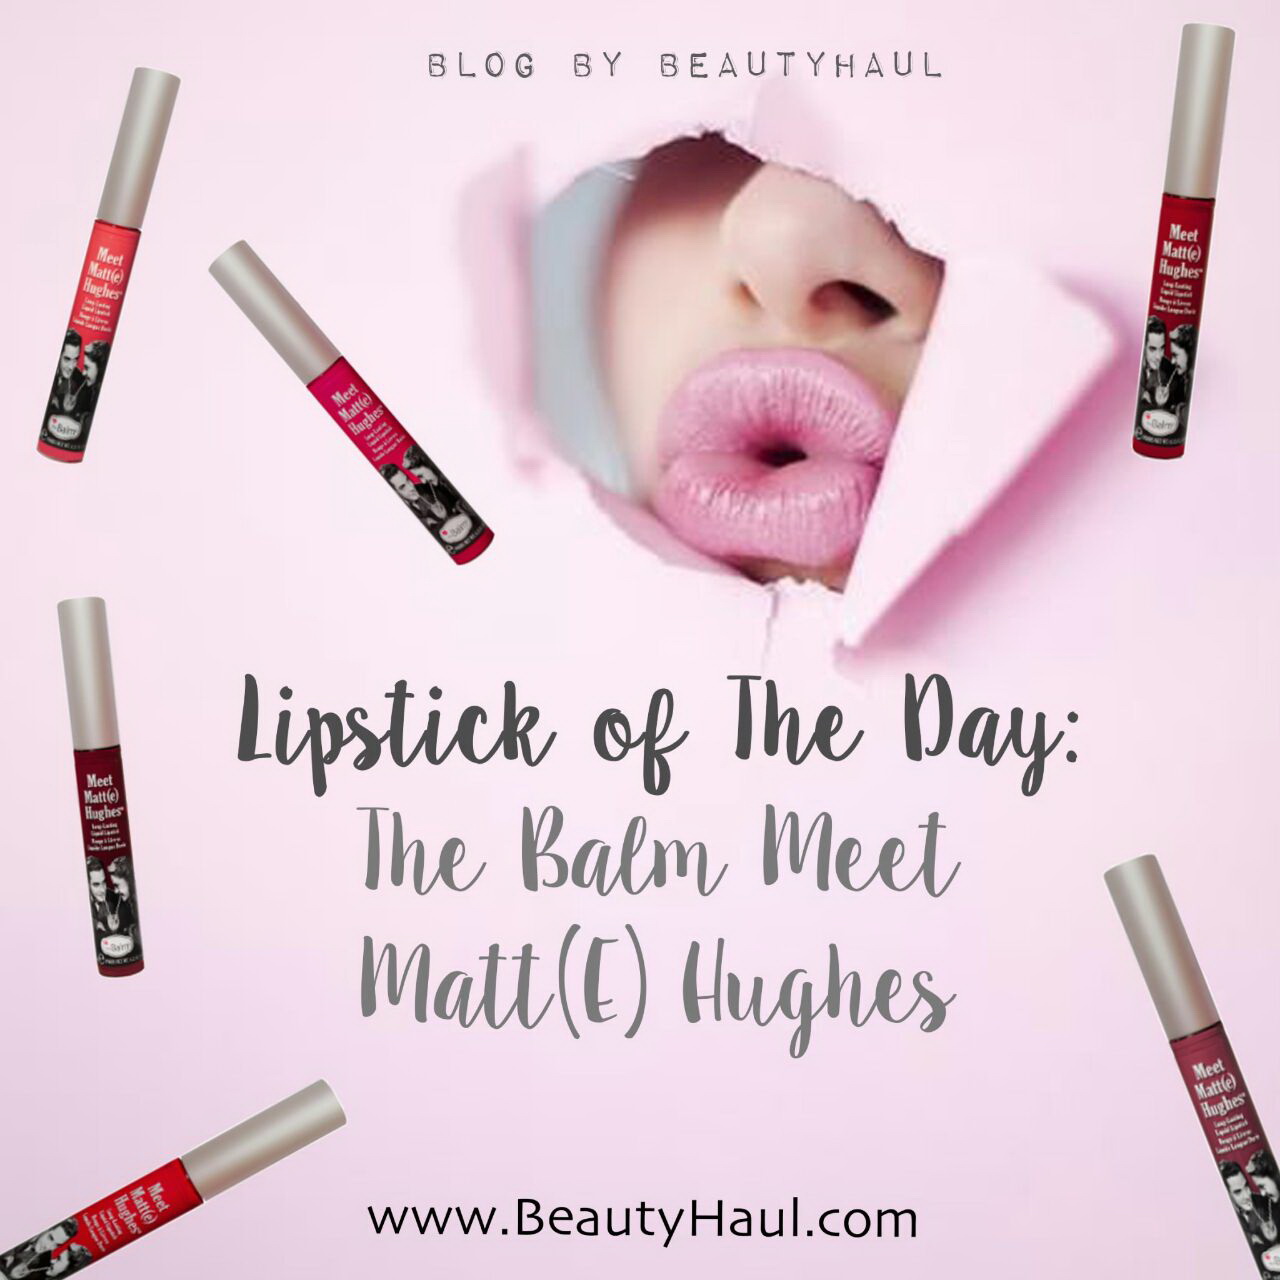 Lipstick of The Day: The Balm Meet Matt(e) Hughes